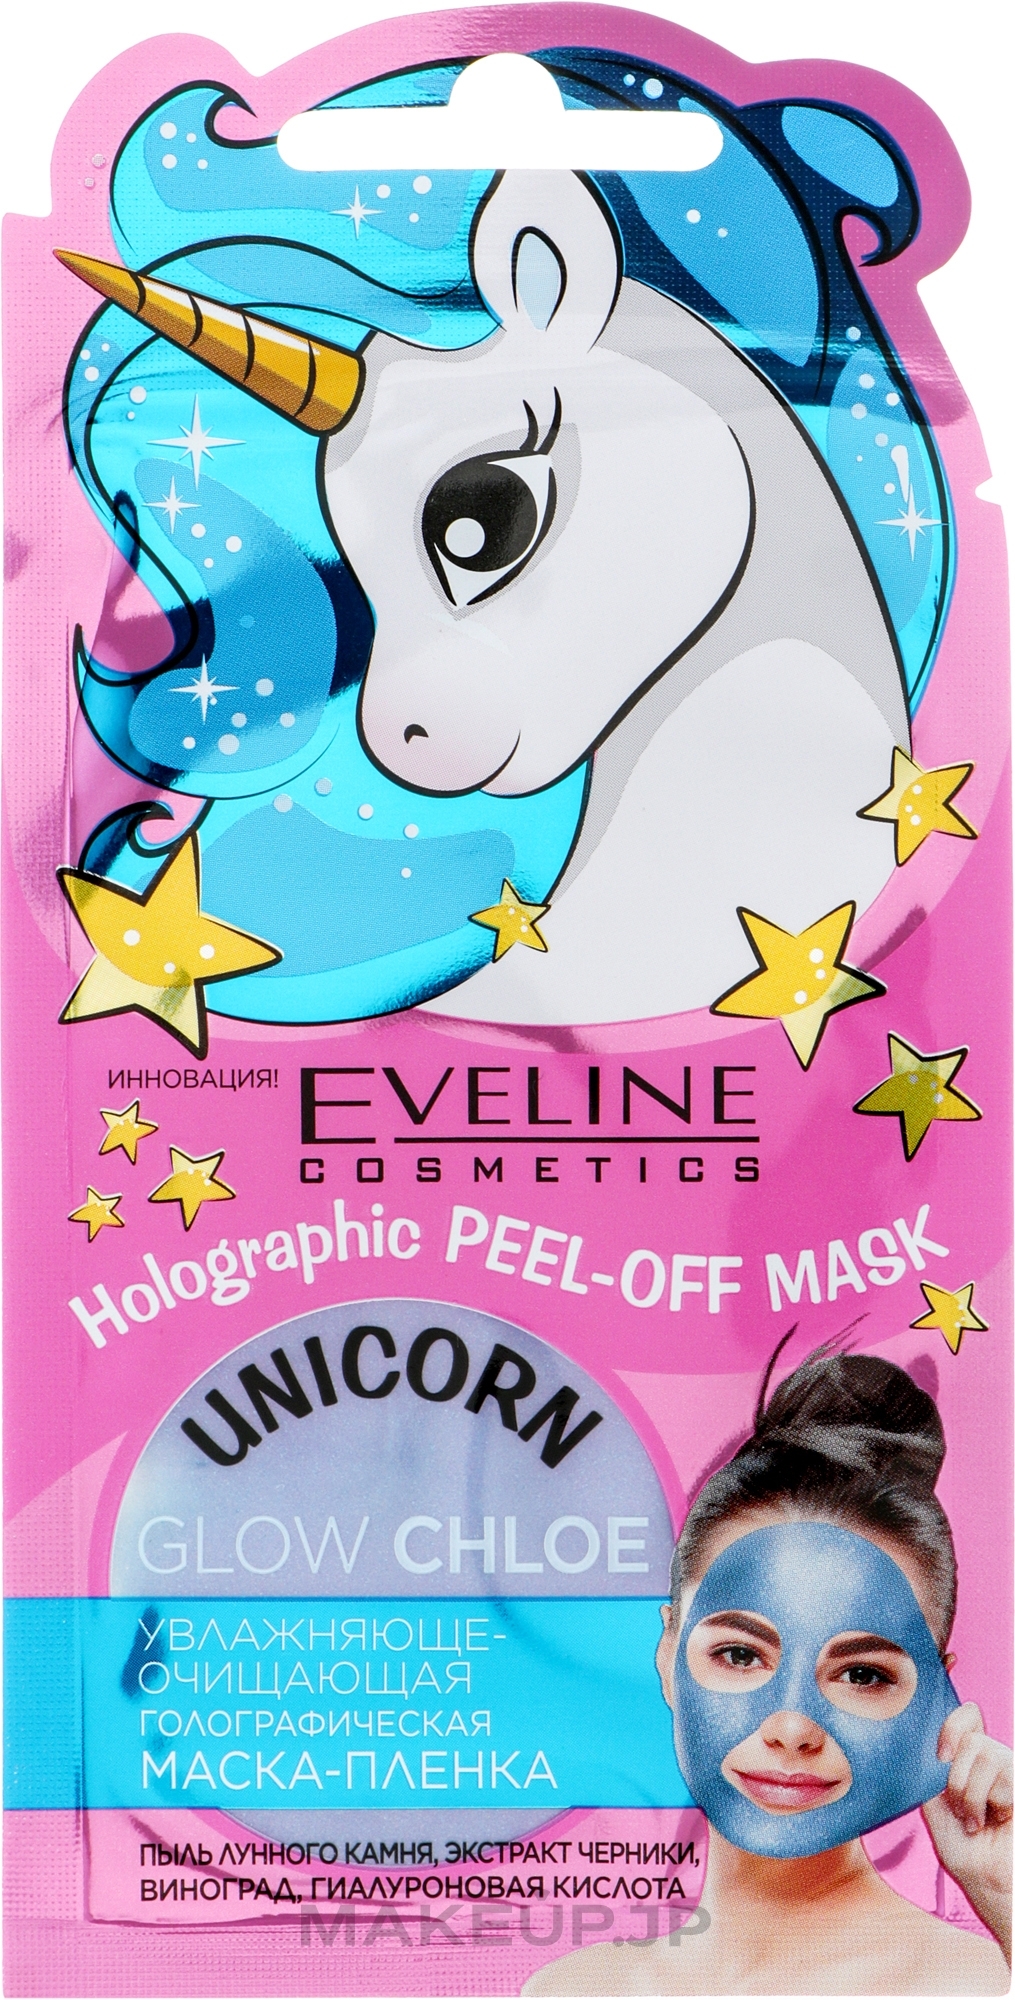 Exfoliating Face Mask - Eveline Cosmetics Unicorn Holographic Peel Off Mask Glow Blue Chloé — photo 7 ml